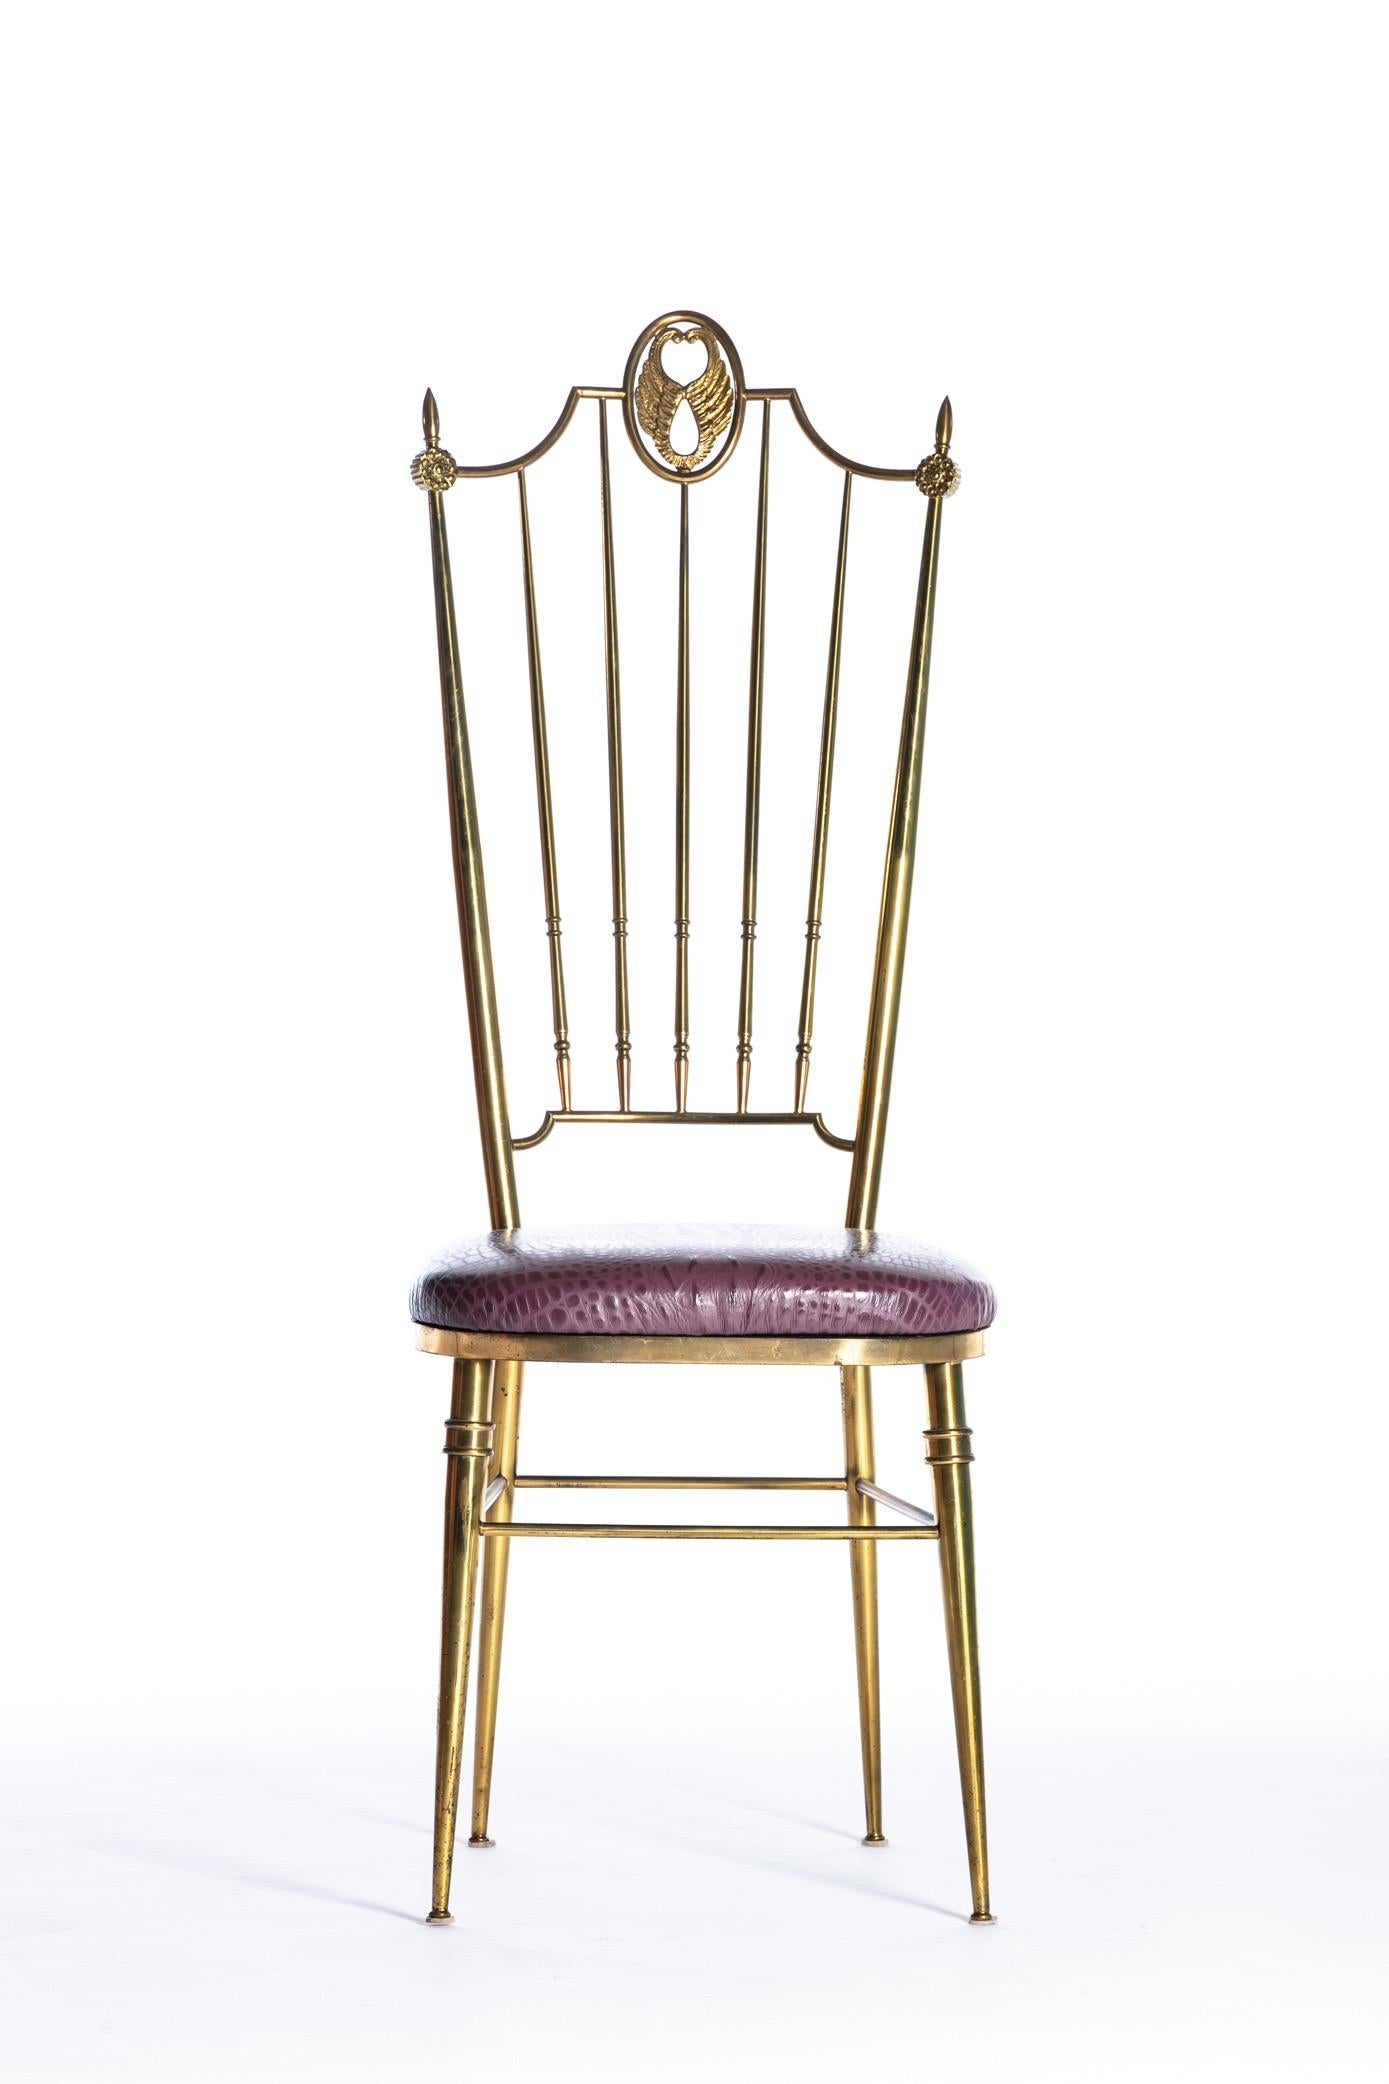 Ein Paar italienische Chiavari-Stühle mit hoher Rückenlehne aus Messing und auberginefarbenen Ledersitzen mit Krokodilprägung, um 1960. Möchten Sie noch mehr schöne Dinge sehen? Scrollen Sie nach unten und klicken Sie auf 